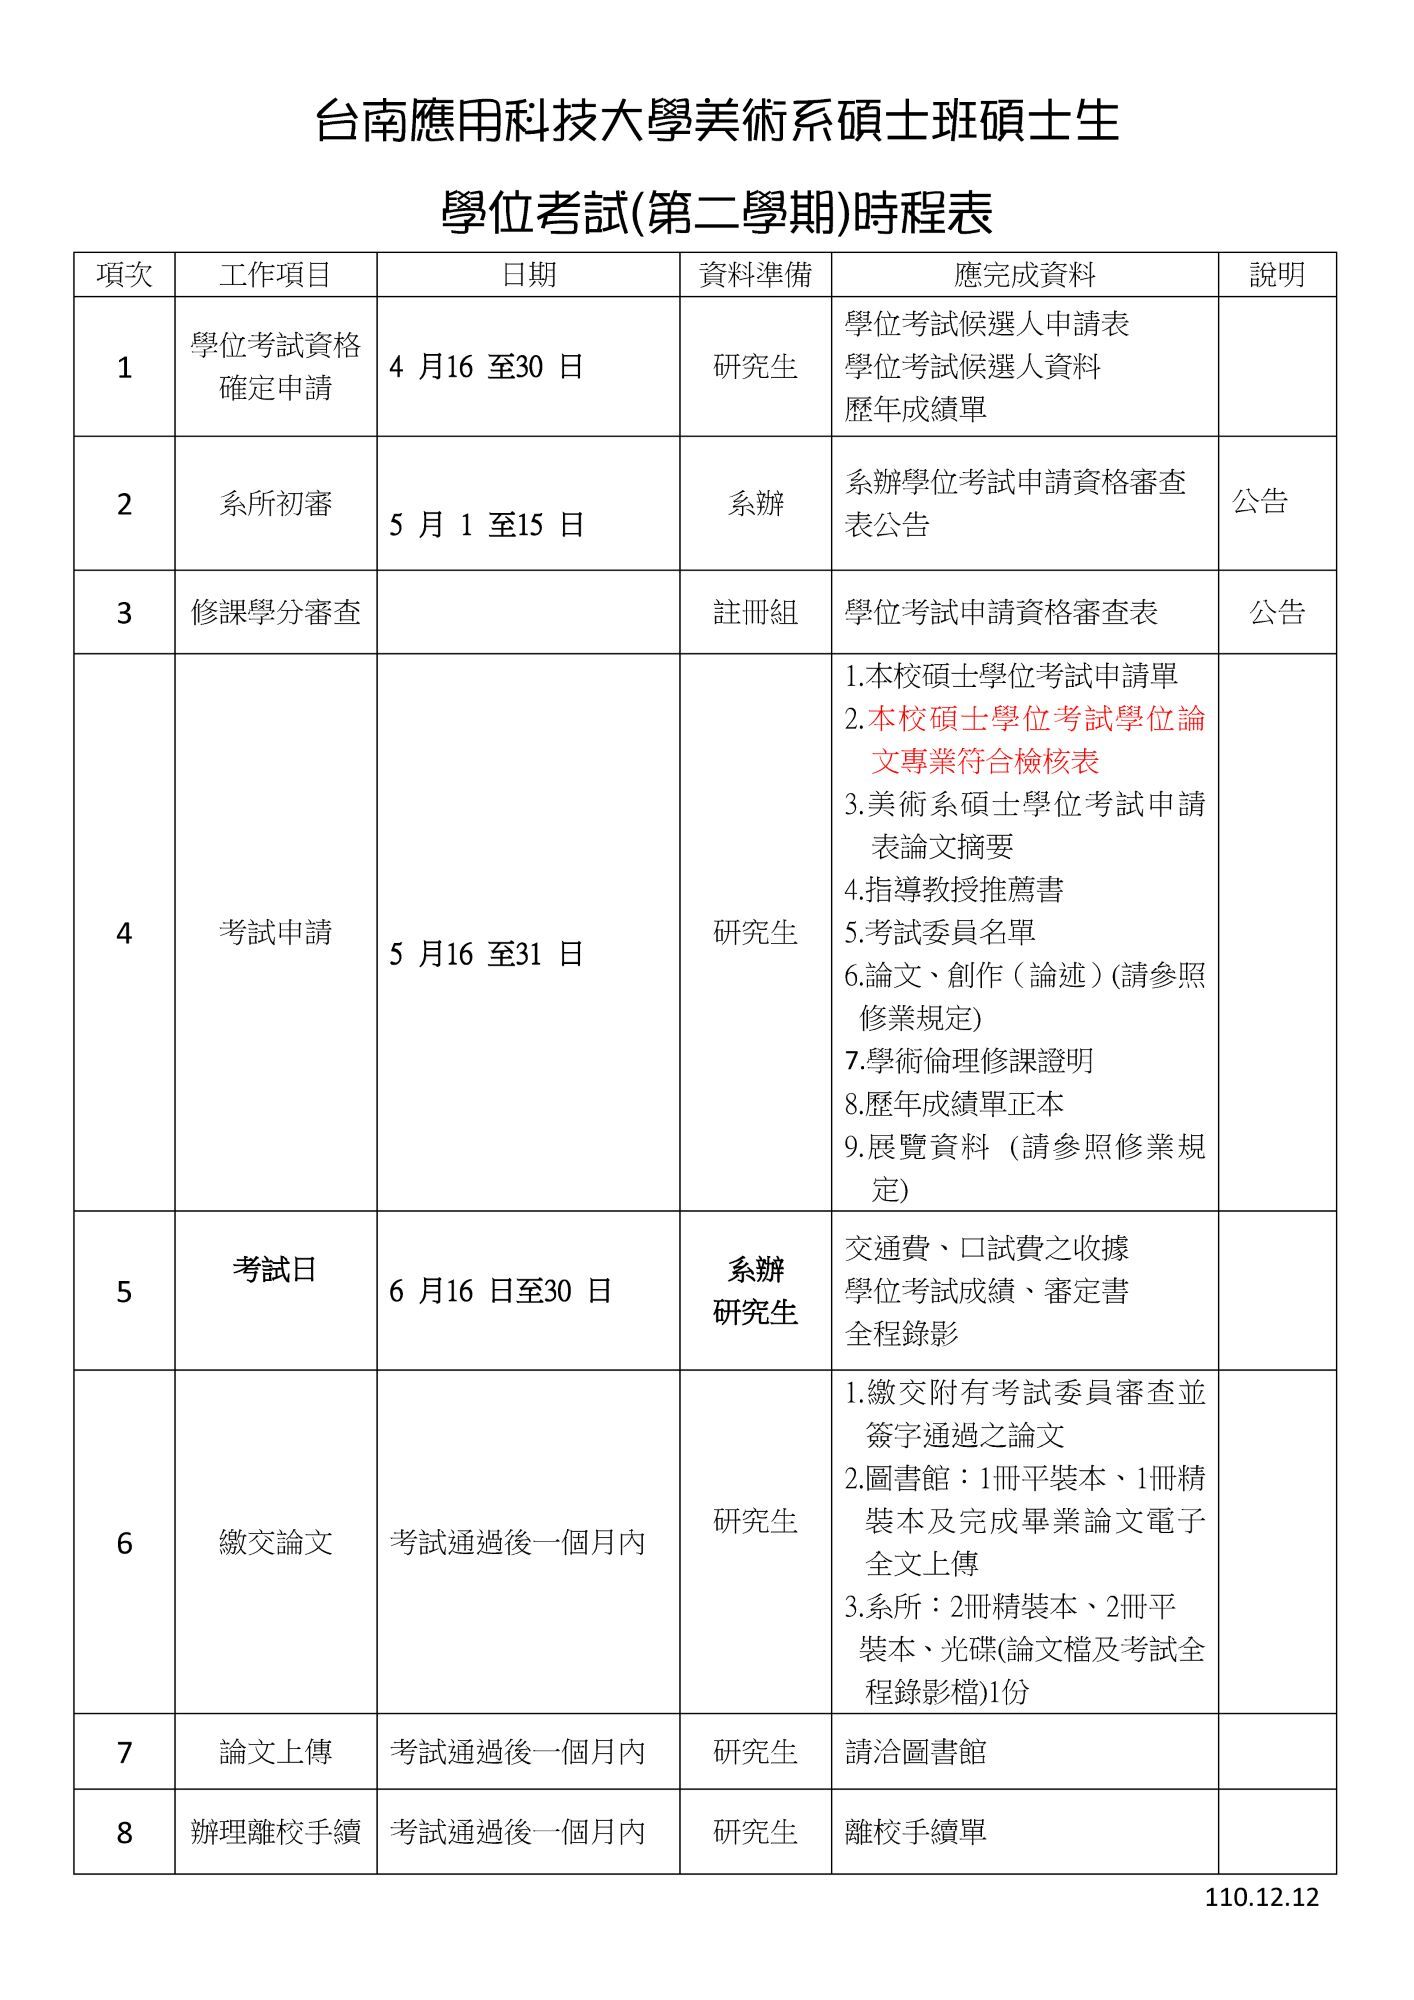 ■ 台南應用科技大學美術系碩士班考試學位時程表